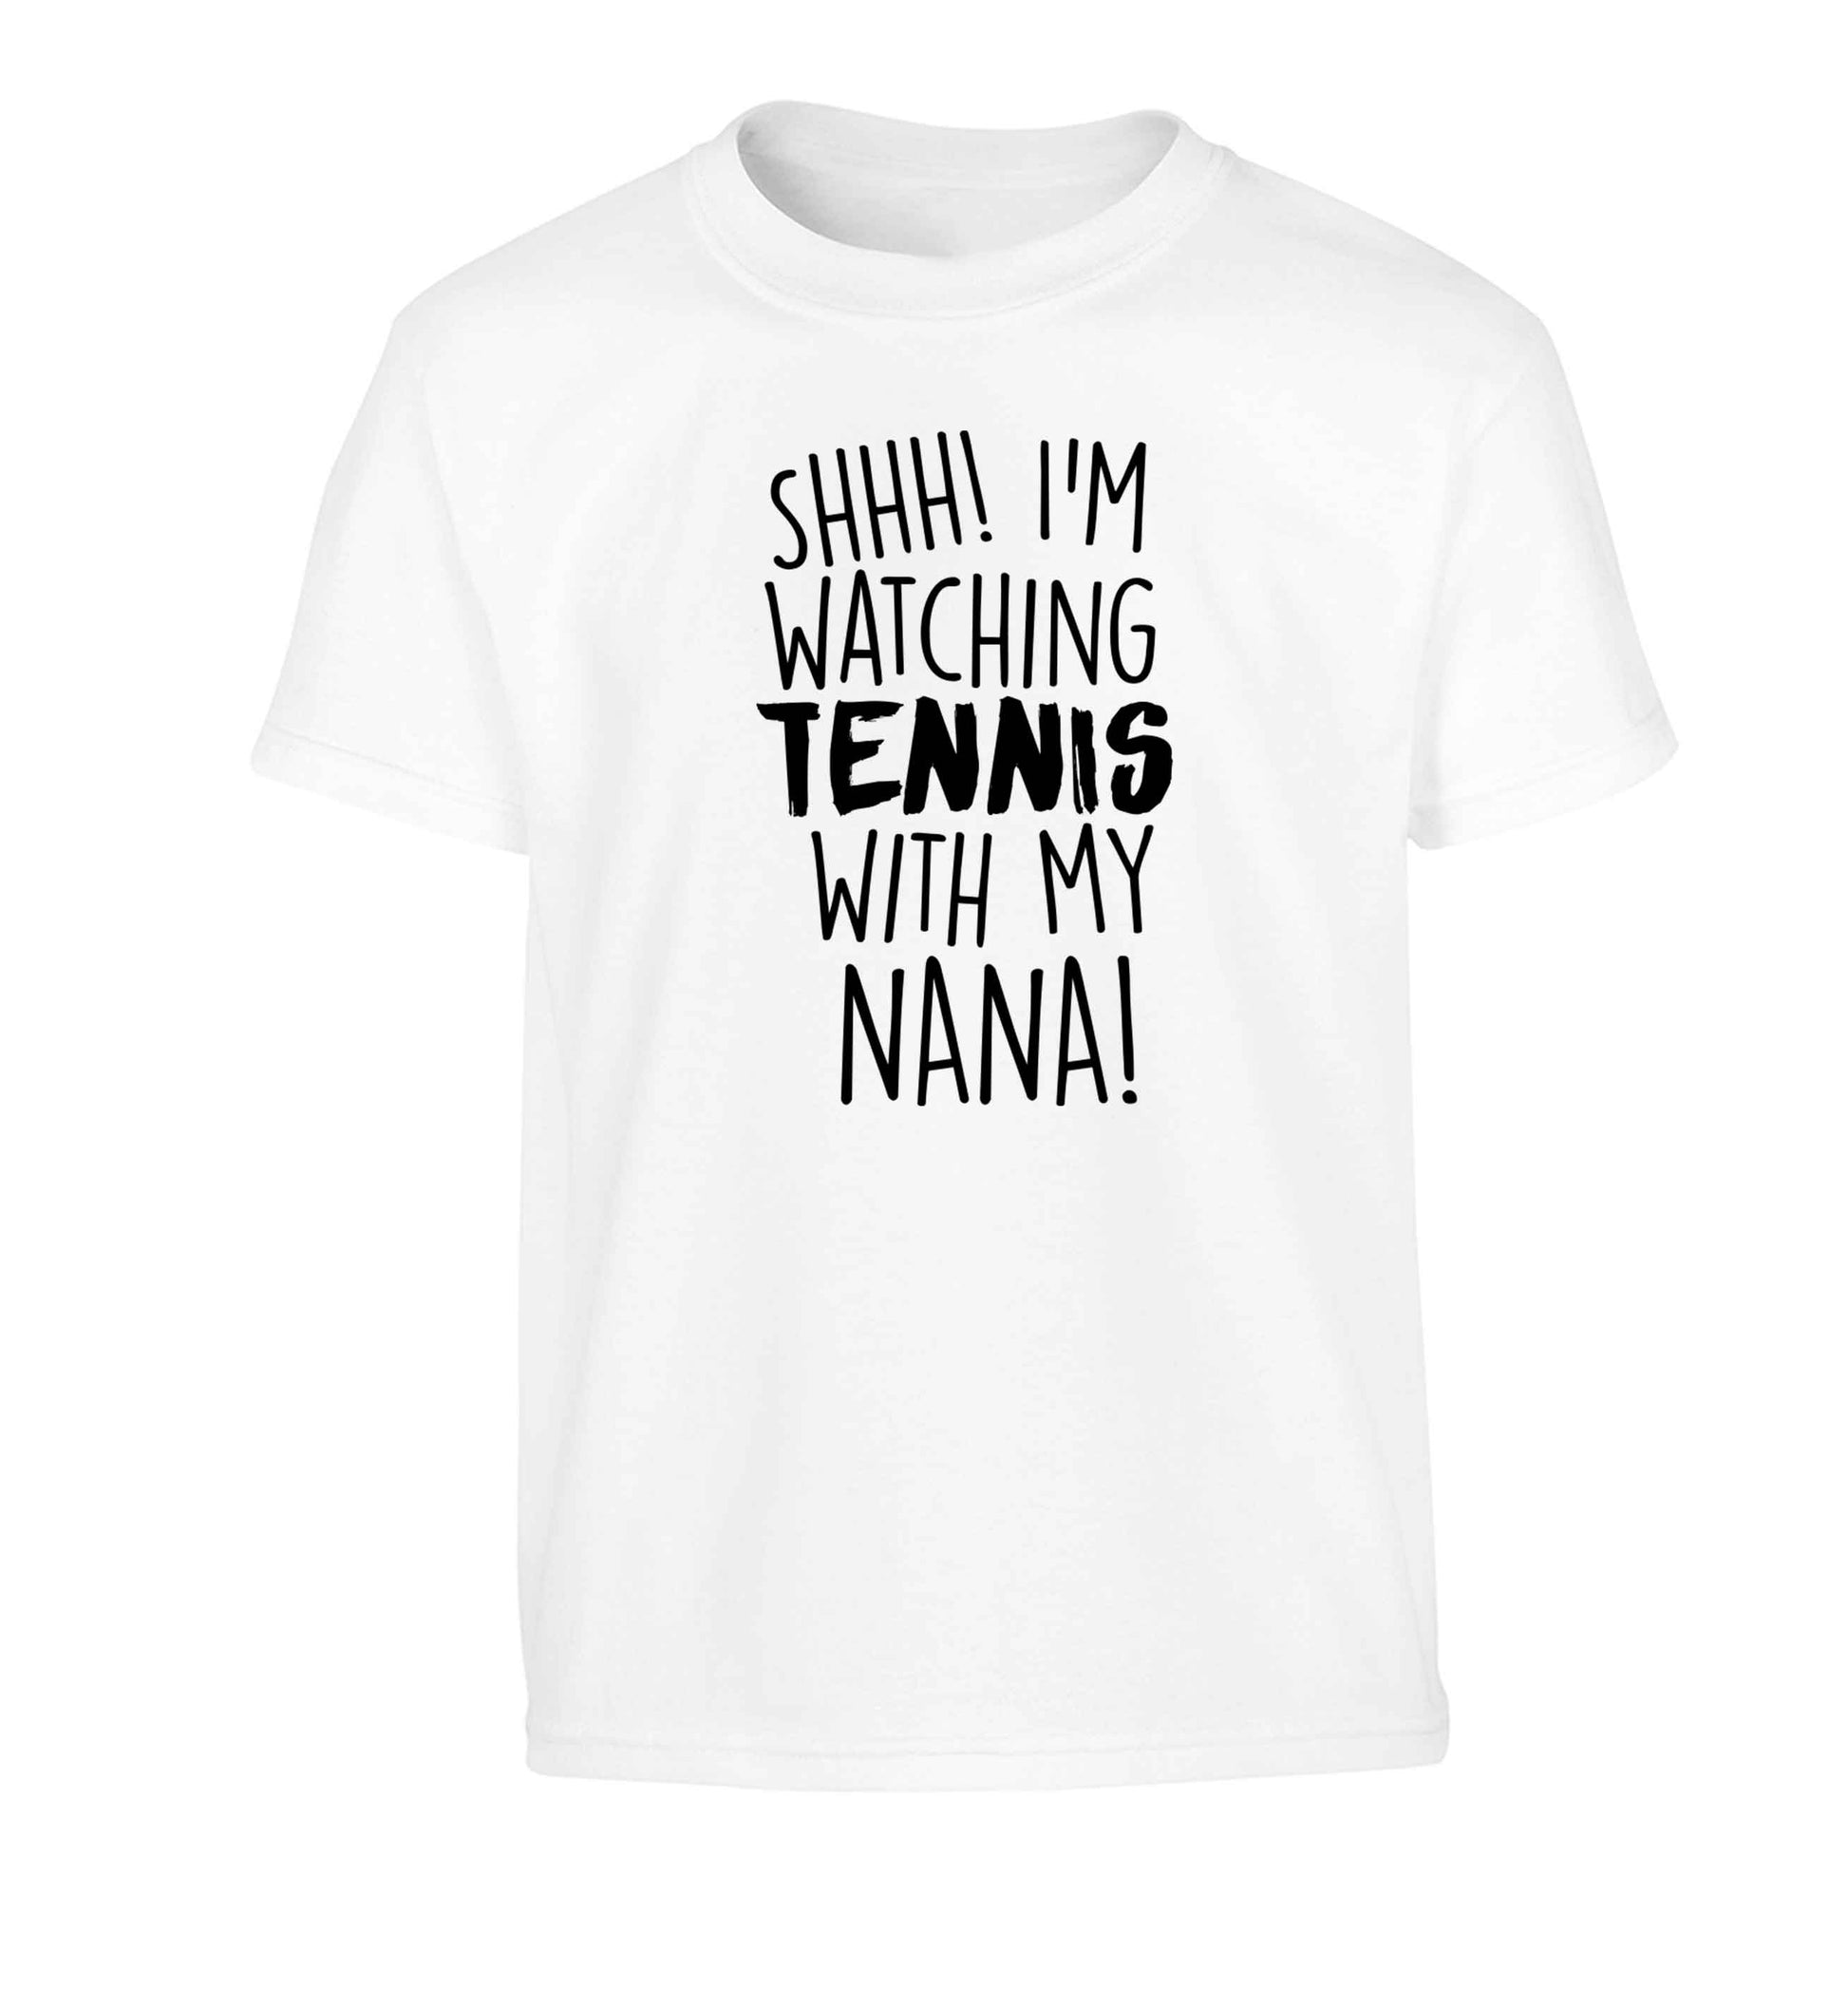 Shh! I'm watching tennis with my nana! Children's white Tshirt 12-13 Years